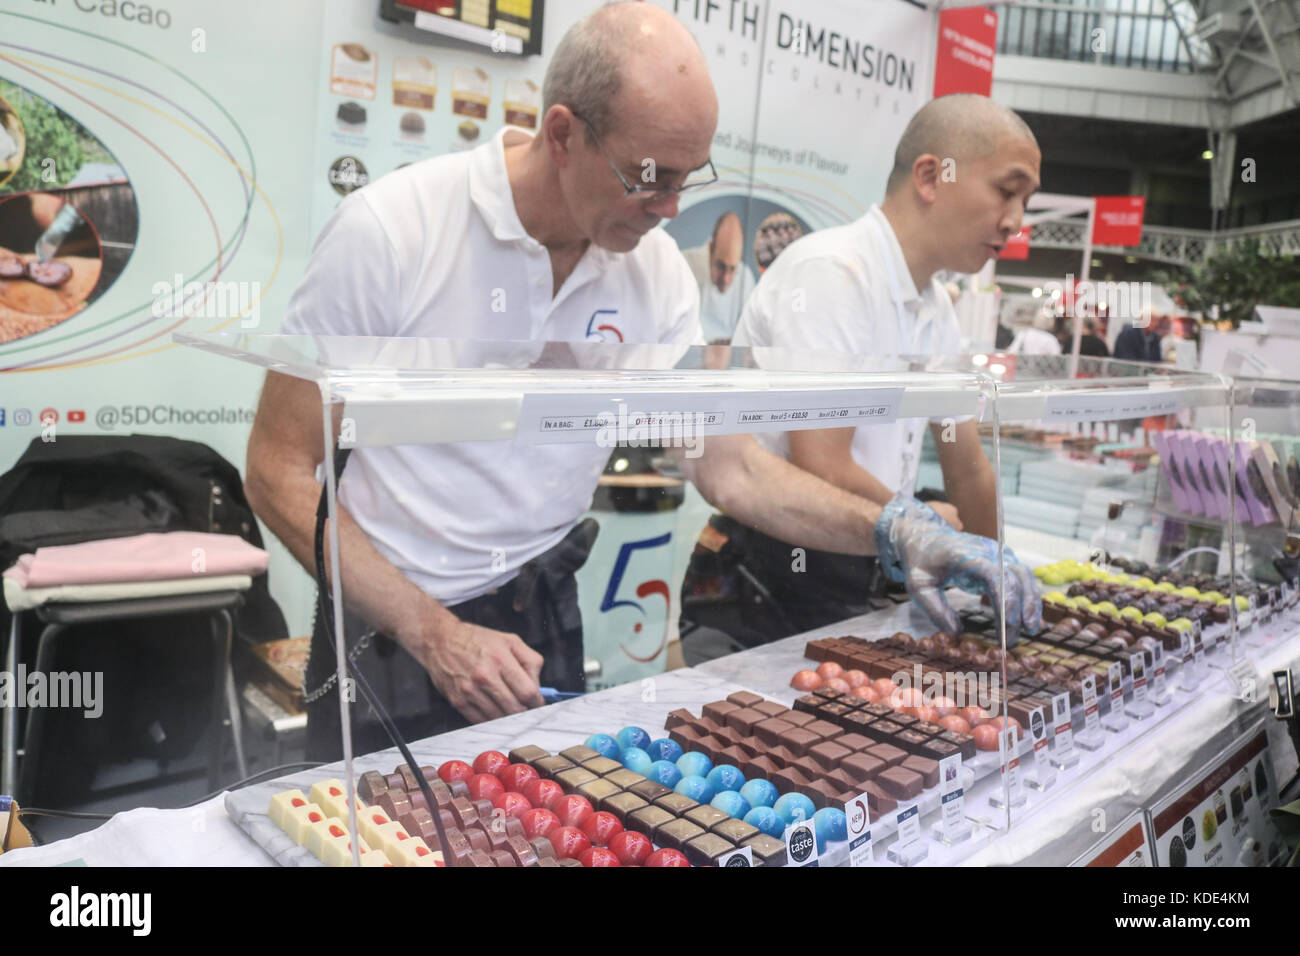 Londres, Royaume-Uni. 13th octobre 2017. Le Chocolate Show s'ouvre à l'Olympia de Londres et présente et célèbre une large gamme de produits de chocolat au cacao et de confiserie des producteurs de chocolat britanniques et internationaux crédit : amer ghazzal/Alay Live News Banque D'Images